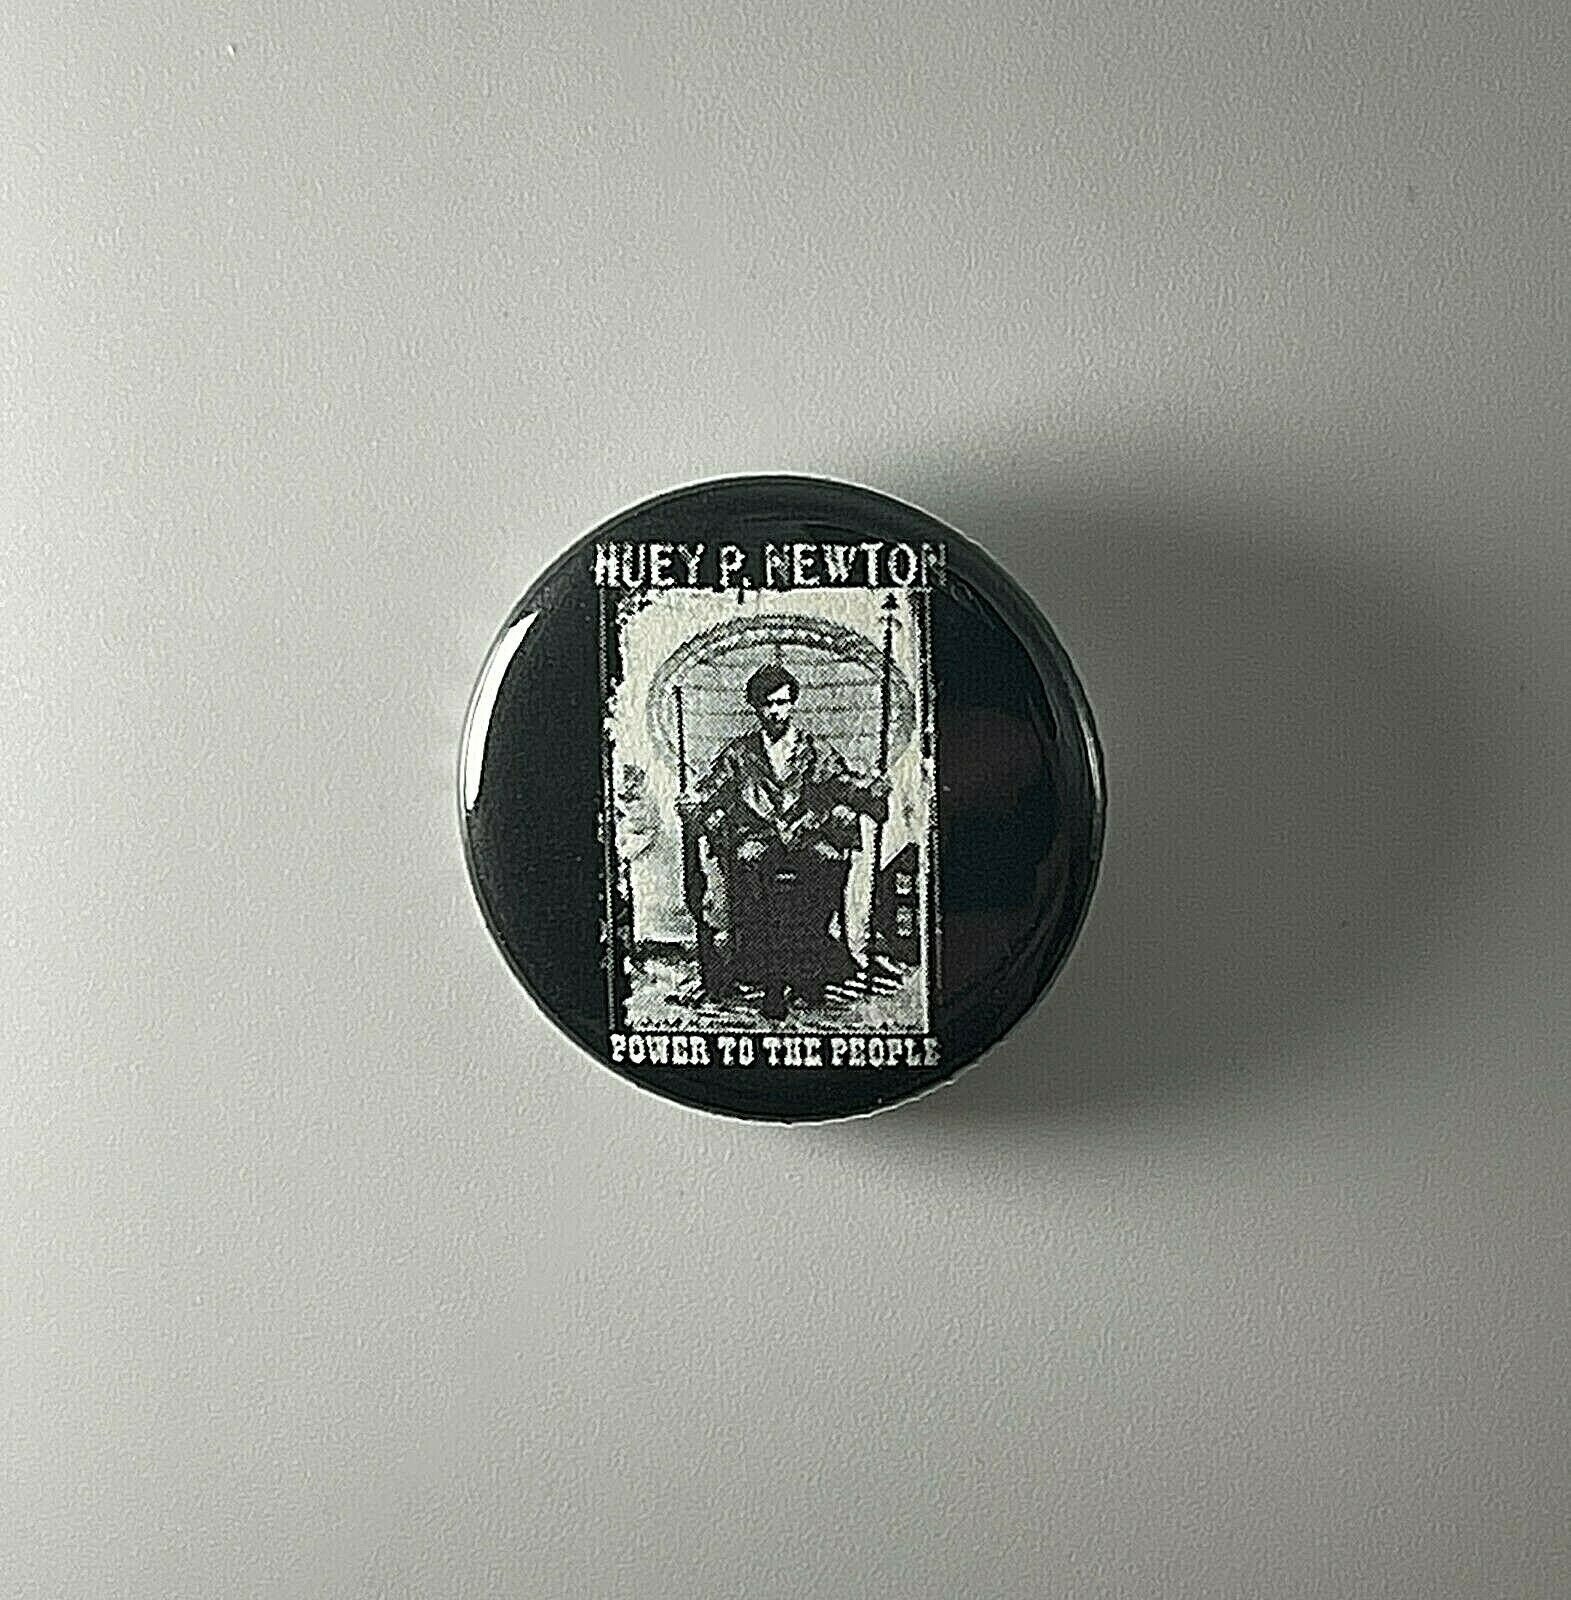 Black Panther Power To The People Huey P. Newton 1.25 "Button B004B125 Pin Abzeichen von Heavylowmerchandise